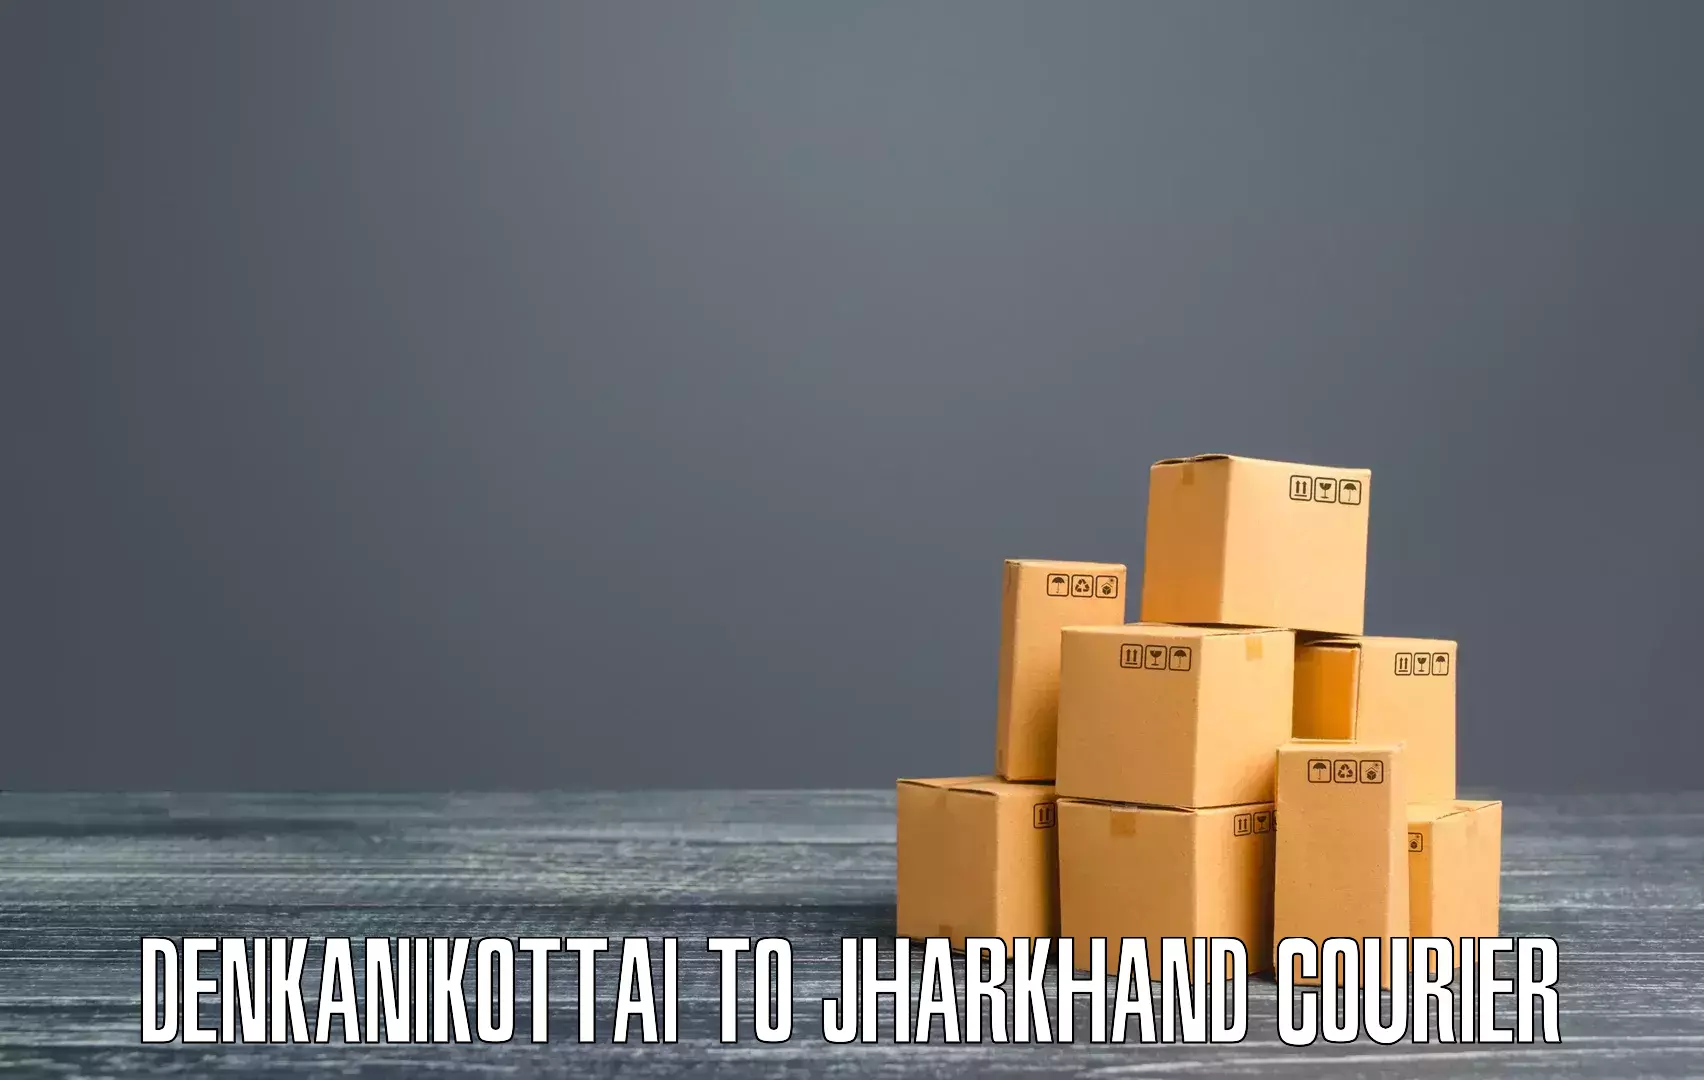 On-demand delivery Denkanikottai to Hariharganj